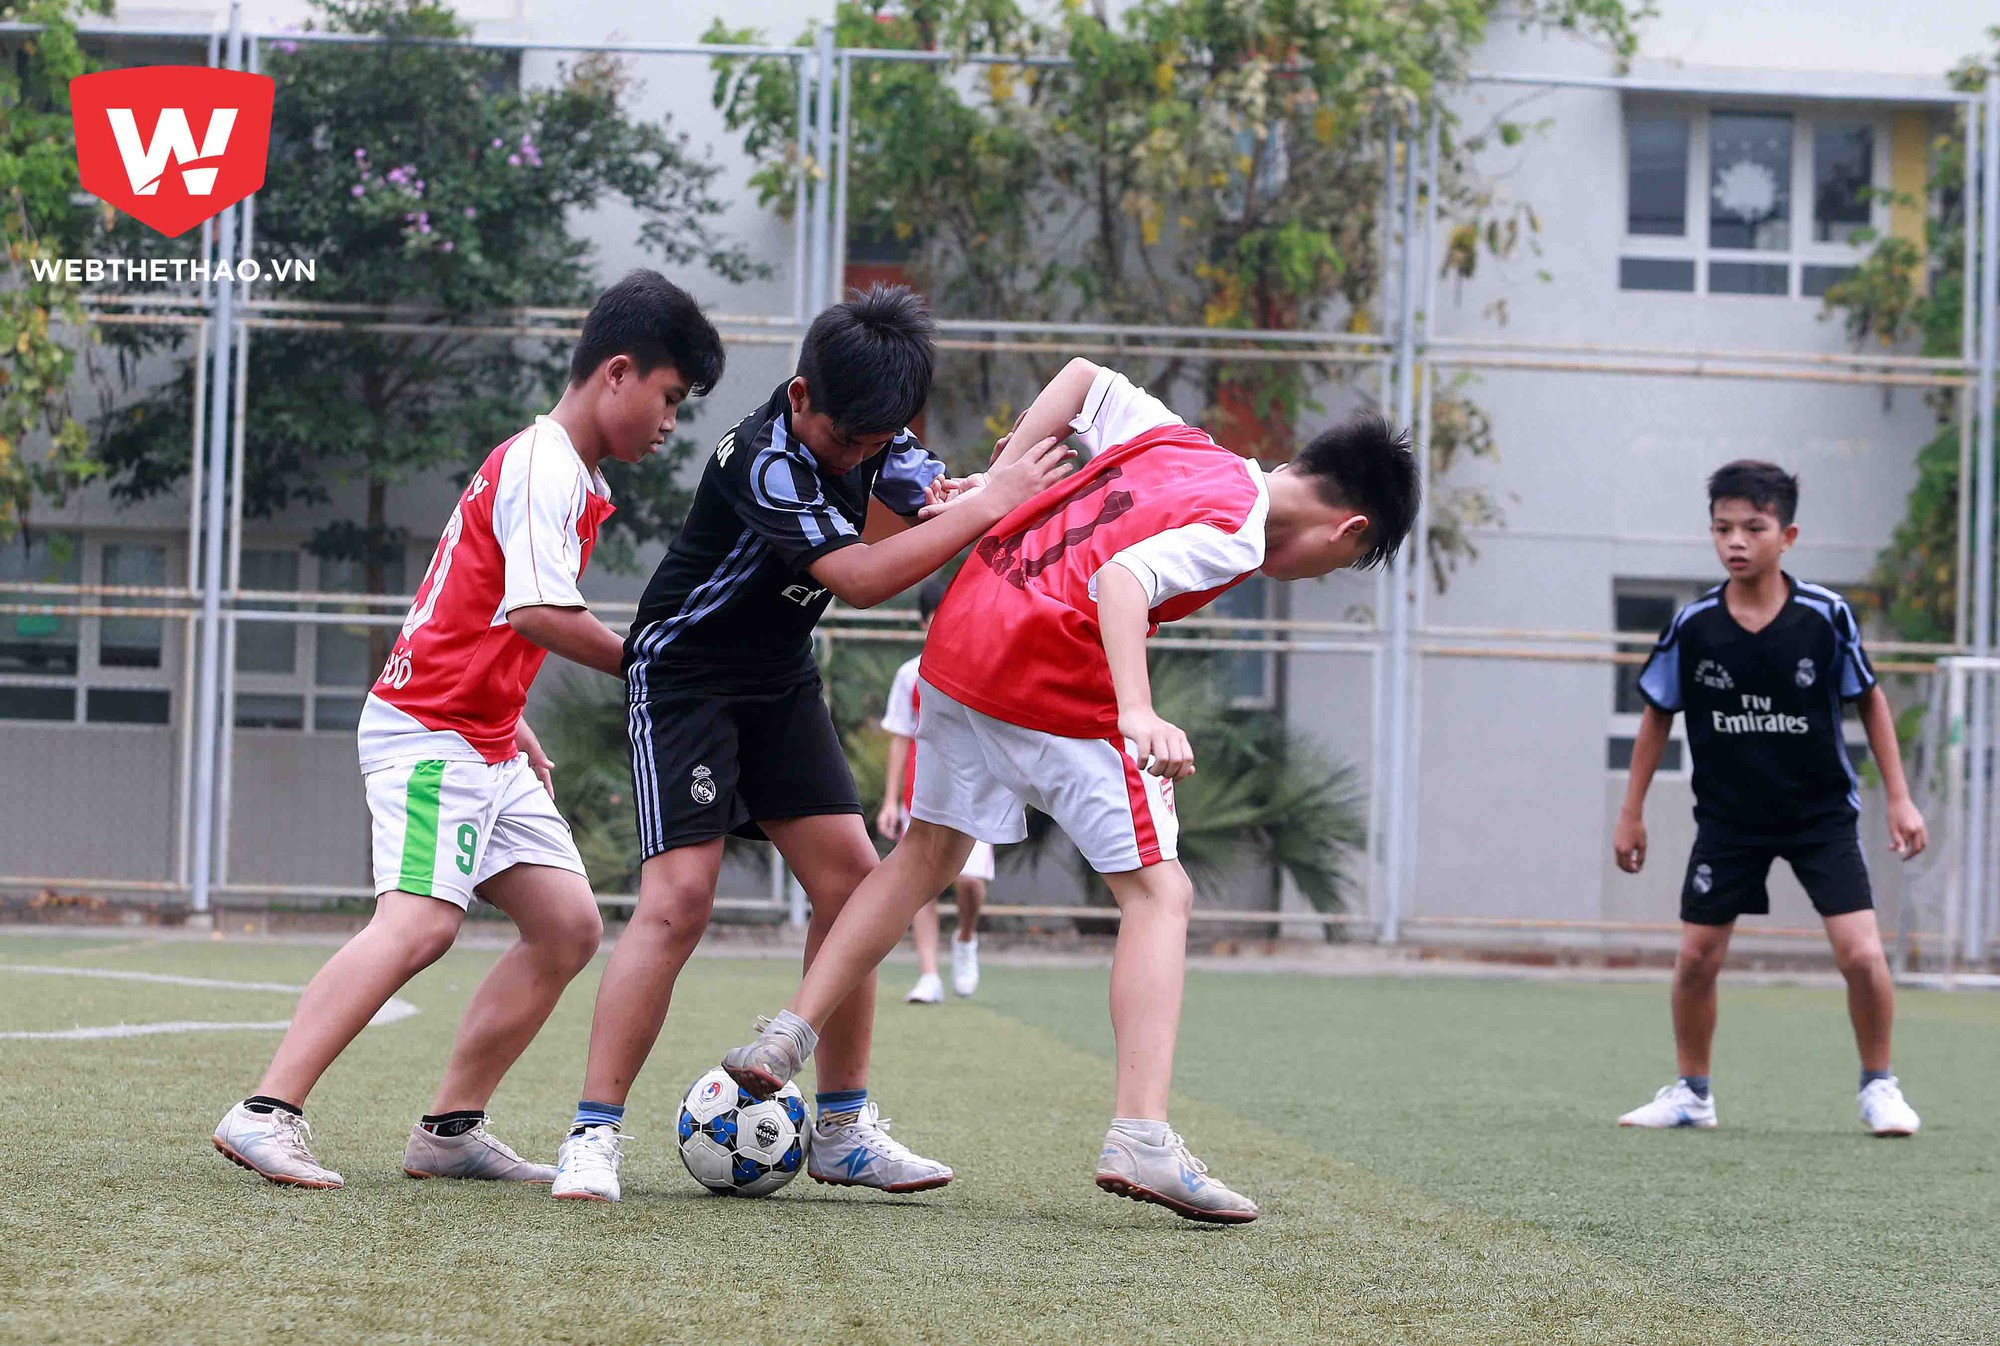 Các trận đấu tại vòng loại Festival bóng đá học đường U13 năm 2017 diễn ra hết sức hấp dẫn, quyết liệt. Ảnh Hải Đăng